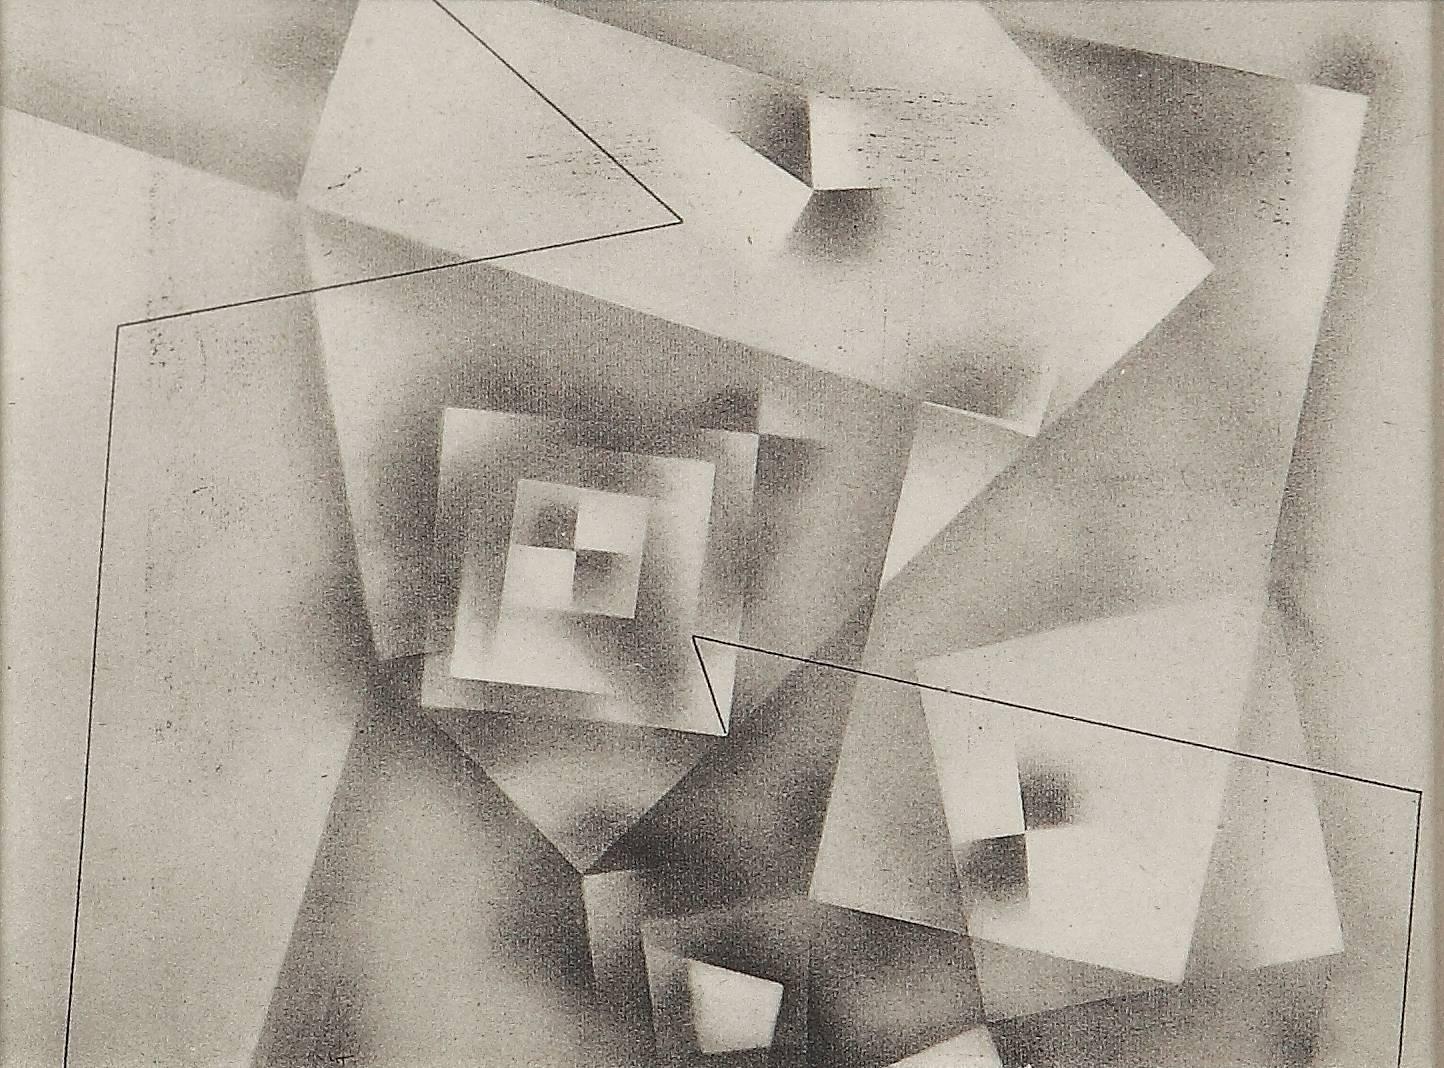 (after) Paul Klee Print - Paul Klee Etching "Plan einer Burg"